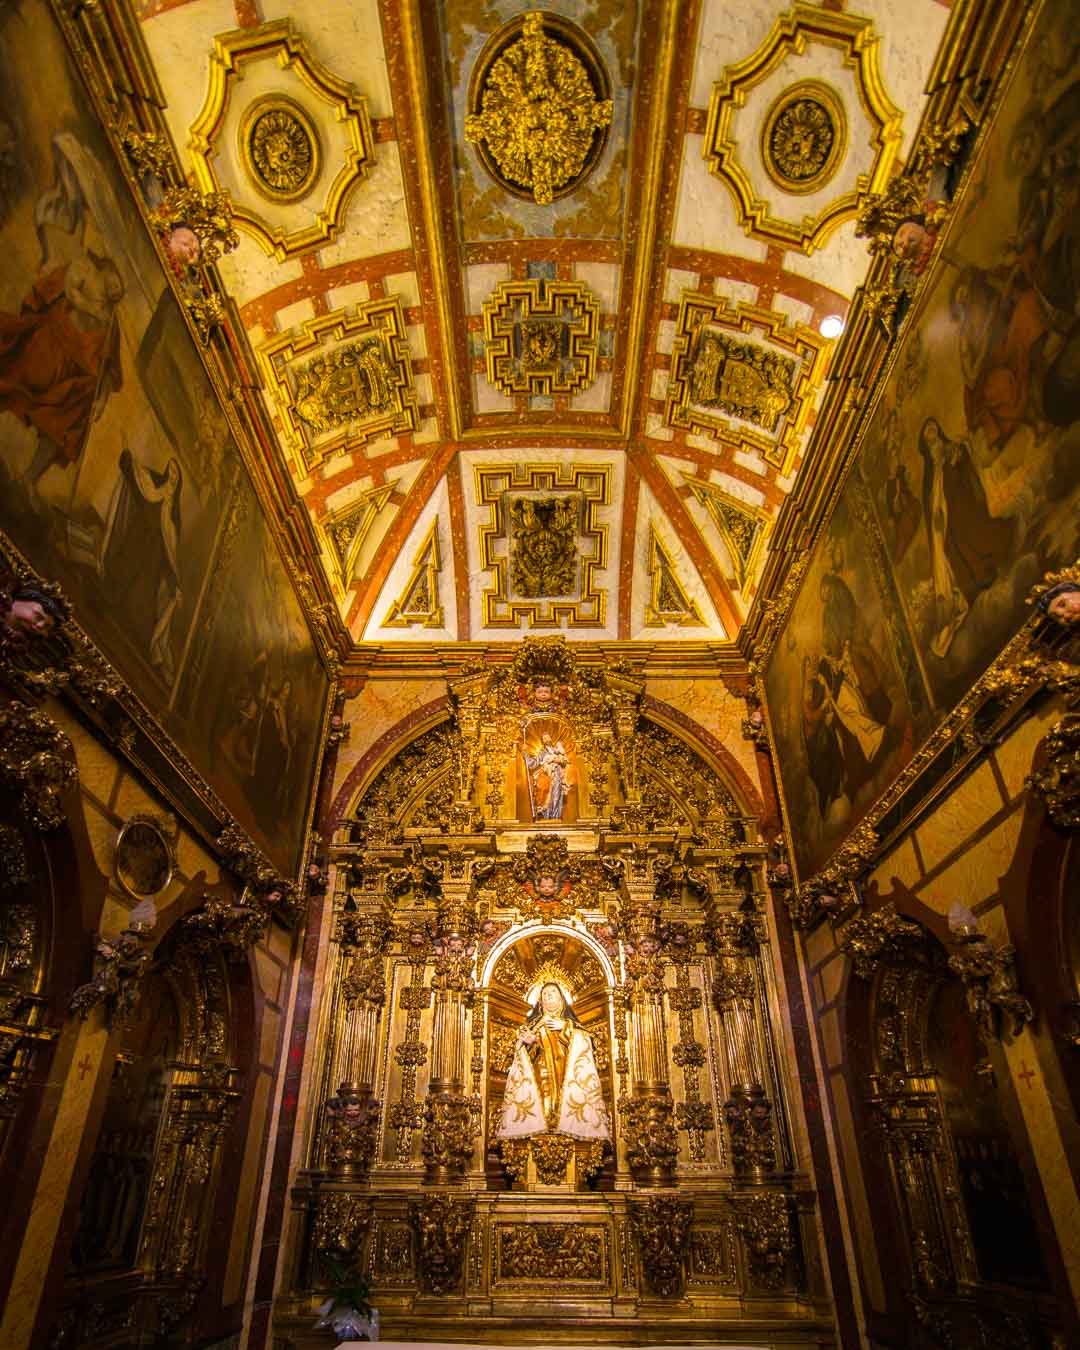 relics room in santa teresa avila